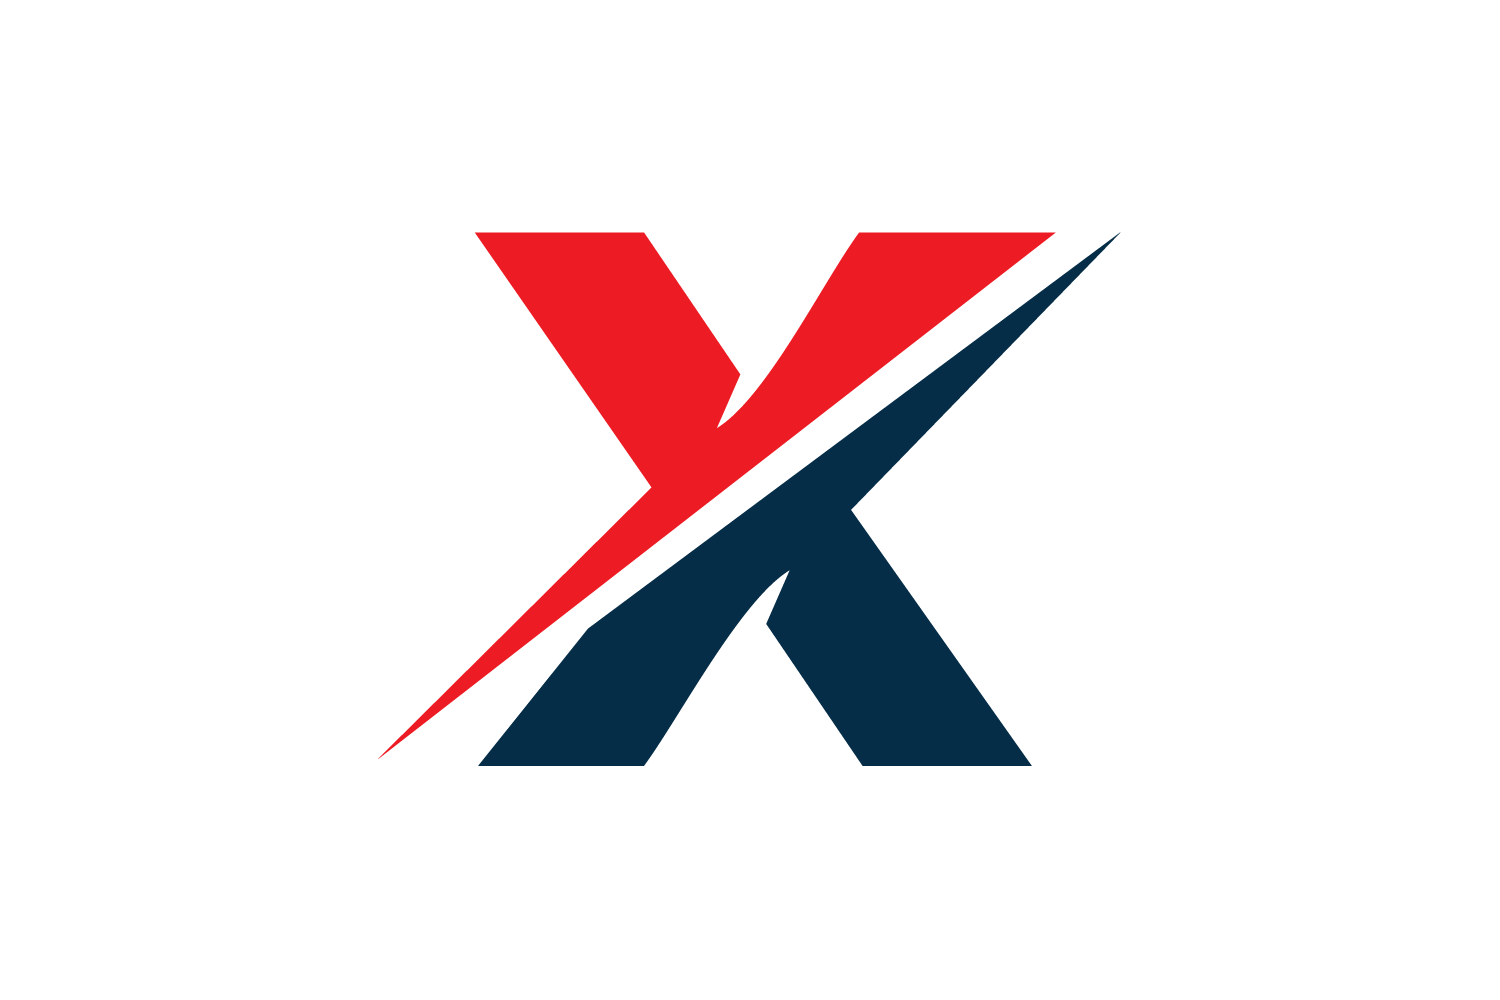 Letter X Logo Design